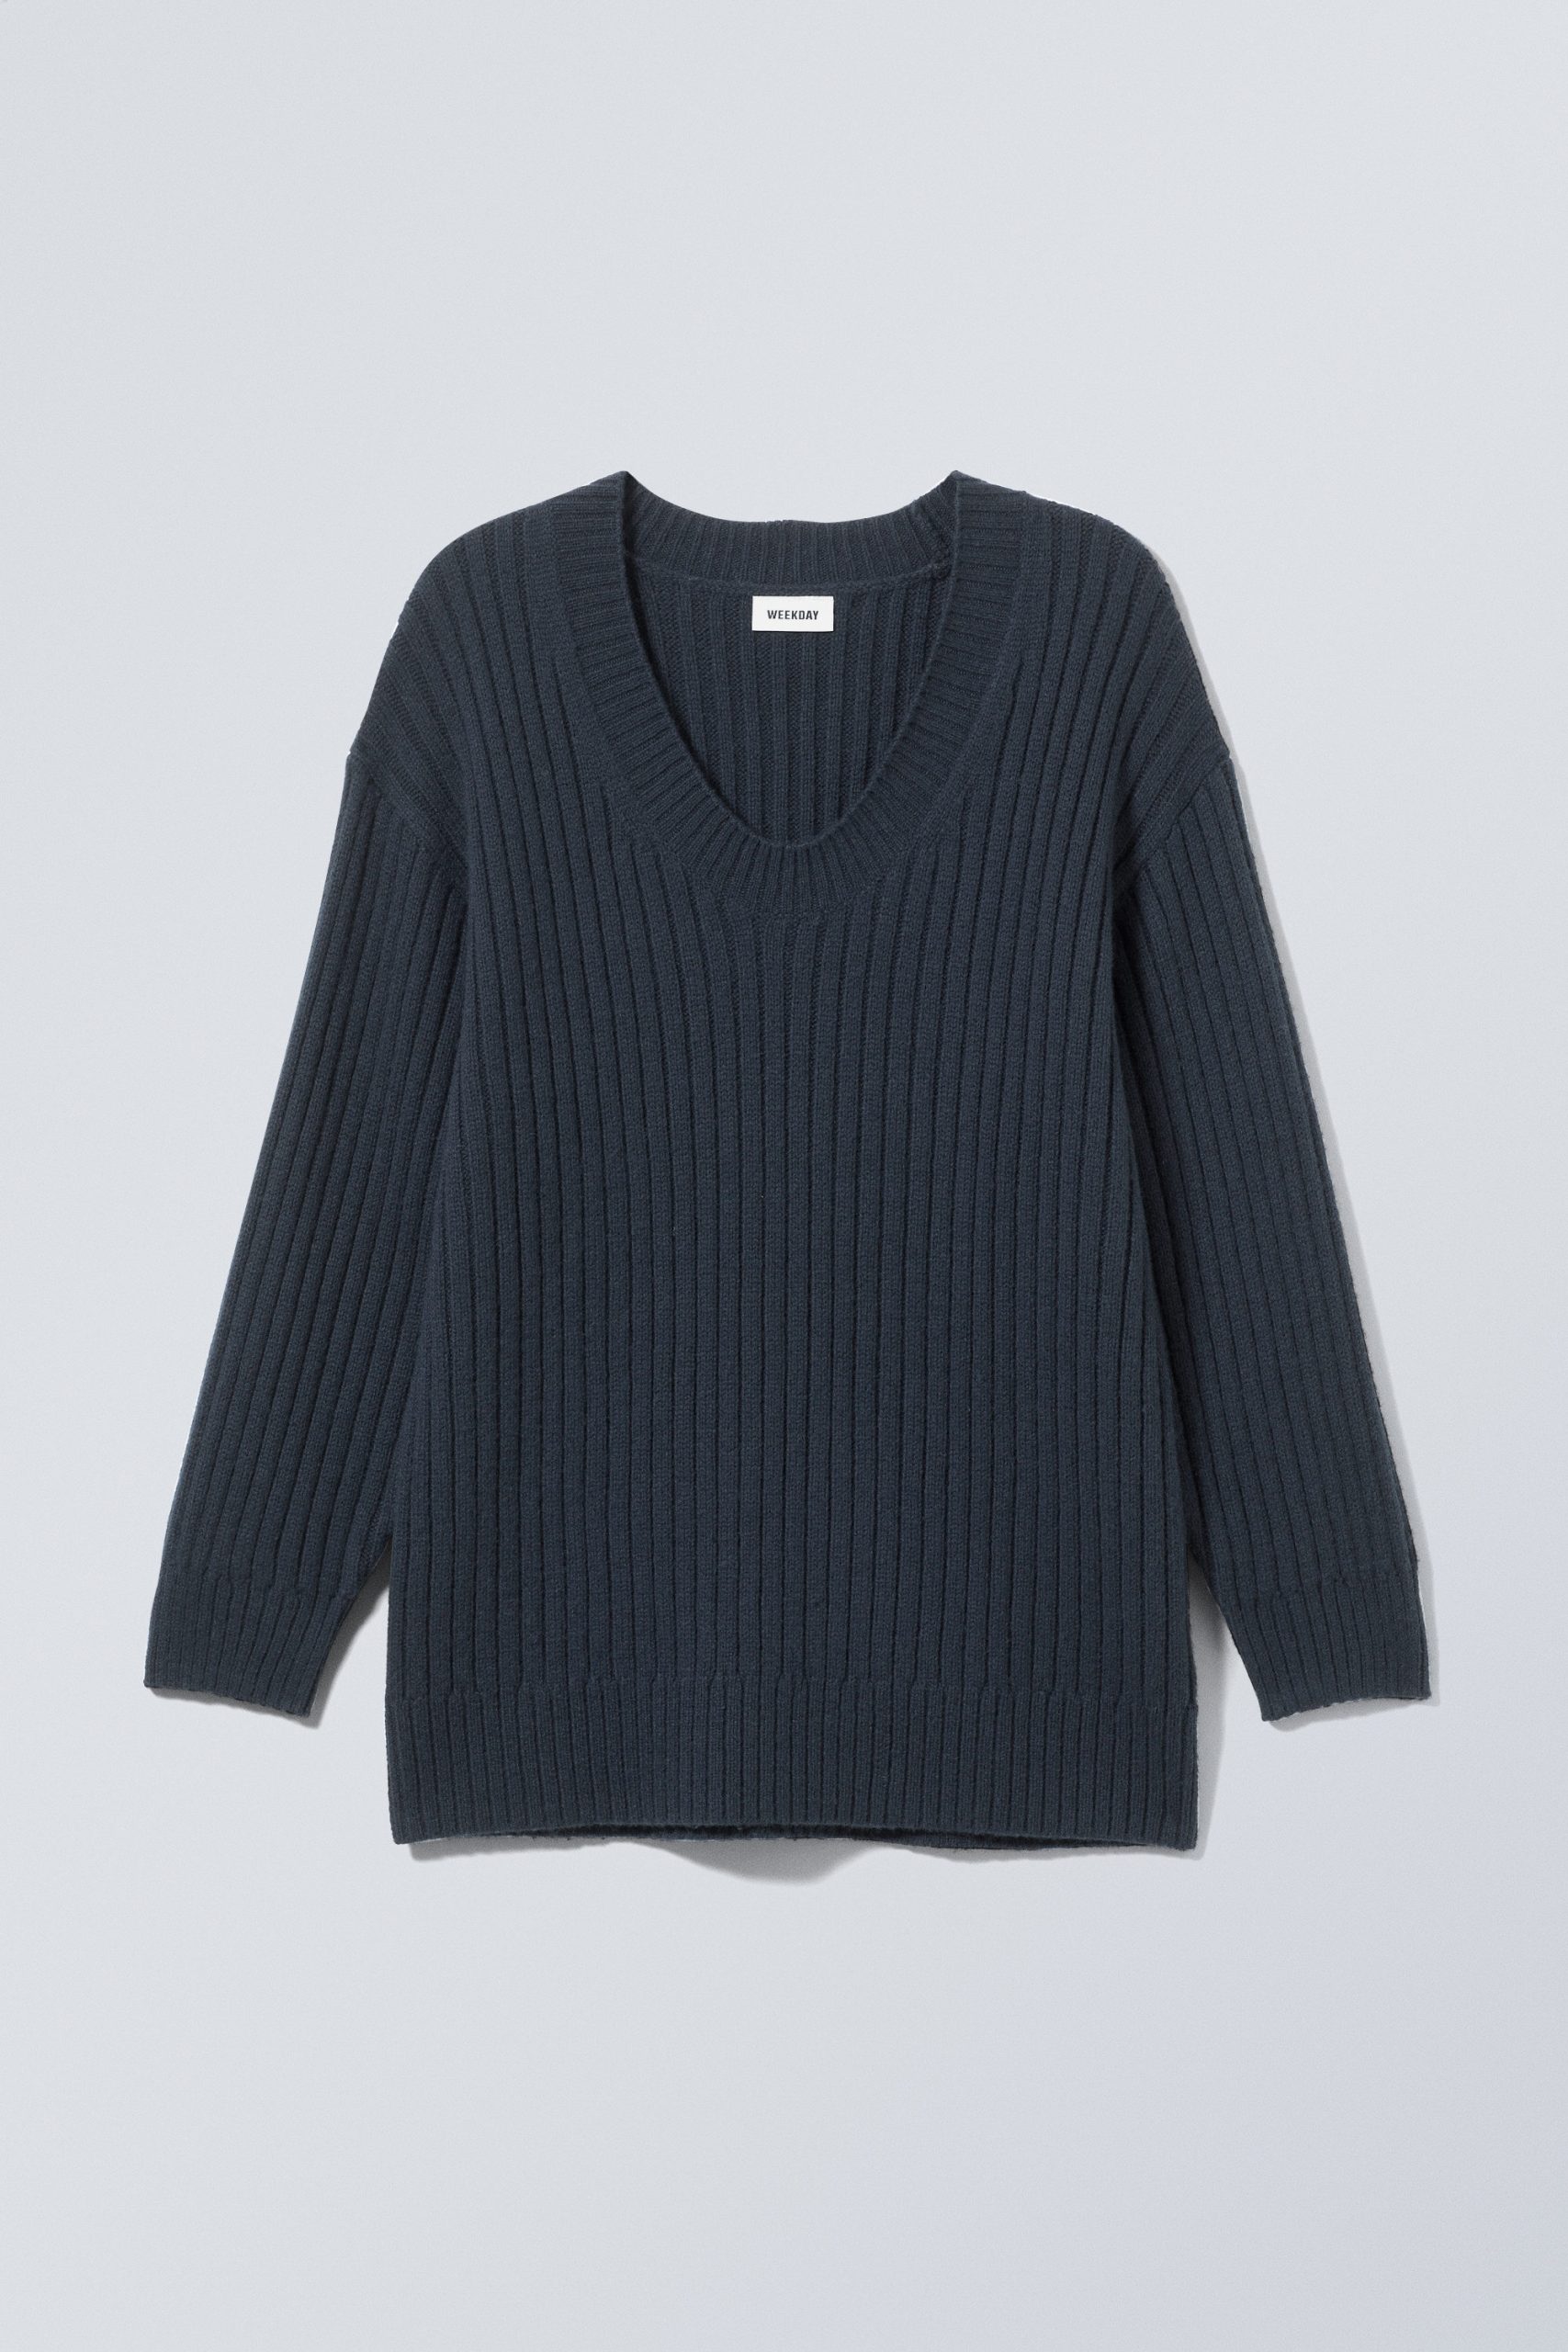 Weekday Oversized-Pullover aus Wollmischung Eden Dunkles Marineblau in Größe S. Farbe: Dark navy